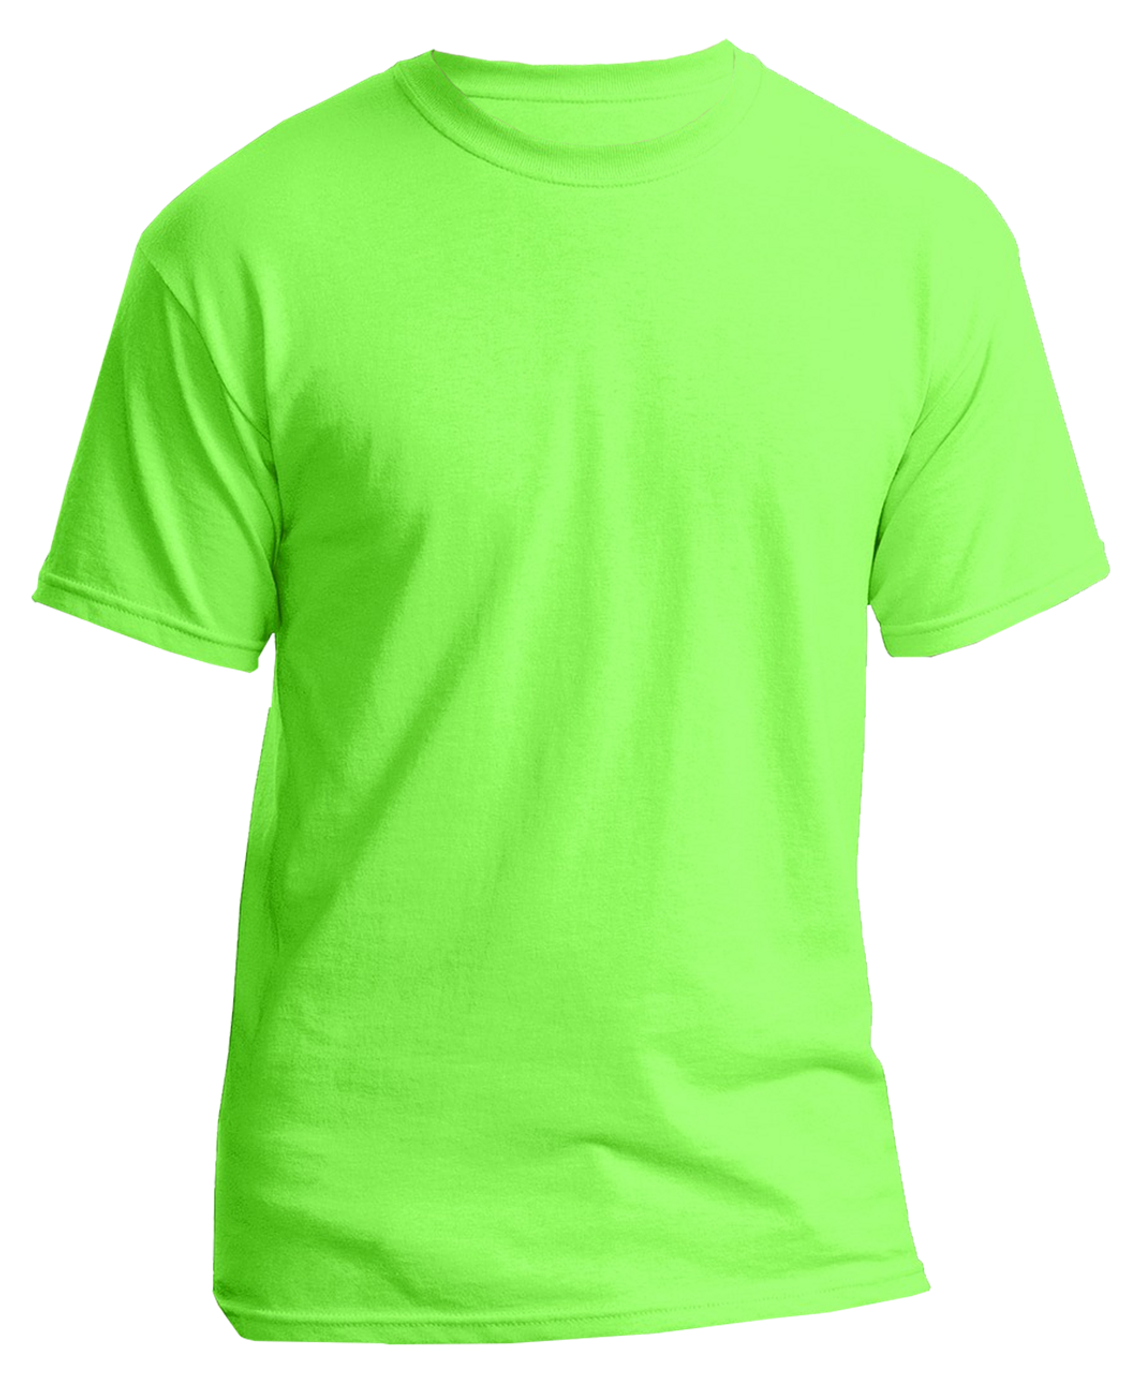 Bieg w zielonych koszulkach